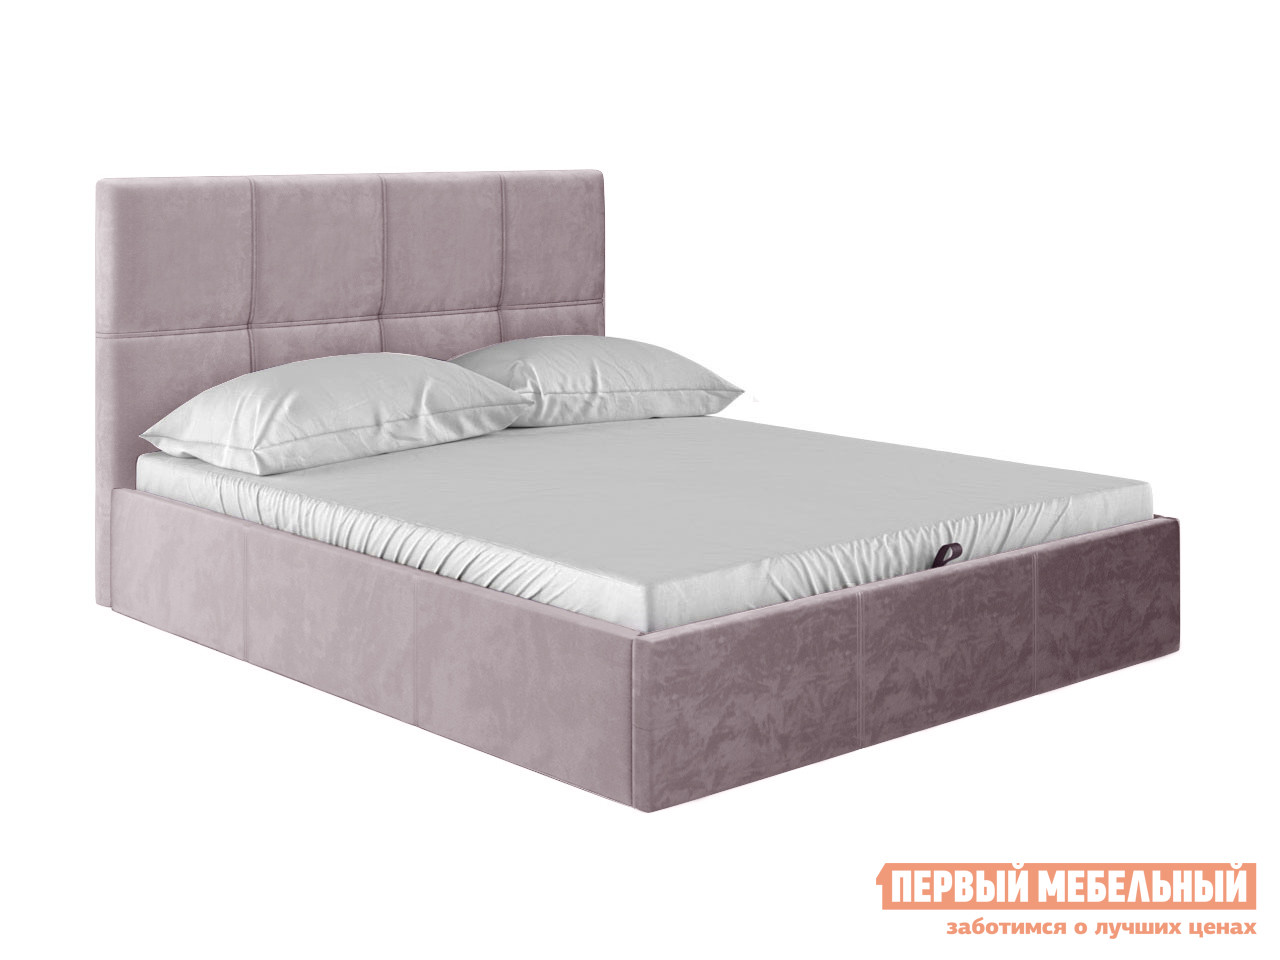 фото Двуспальная кровать первый мебельный верда пм розовый, велюр, 160х200 см